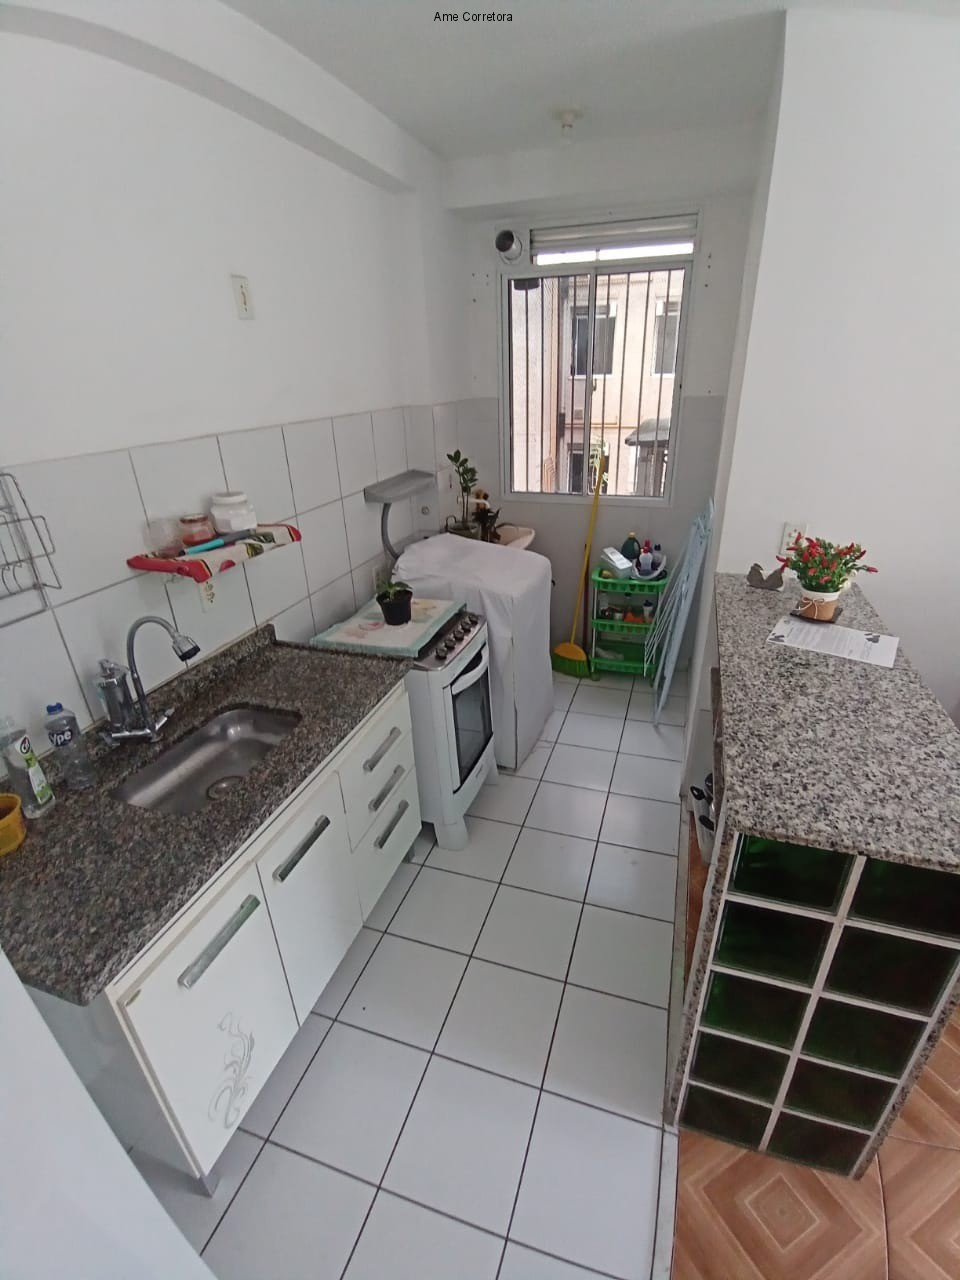 FOTO 05 - Apartamento 2 quartos à venda Rio de Janeiro,RJ - R$ 150.000 - AP00435 - 5